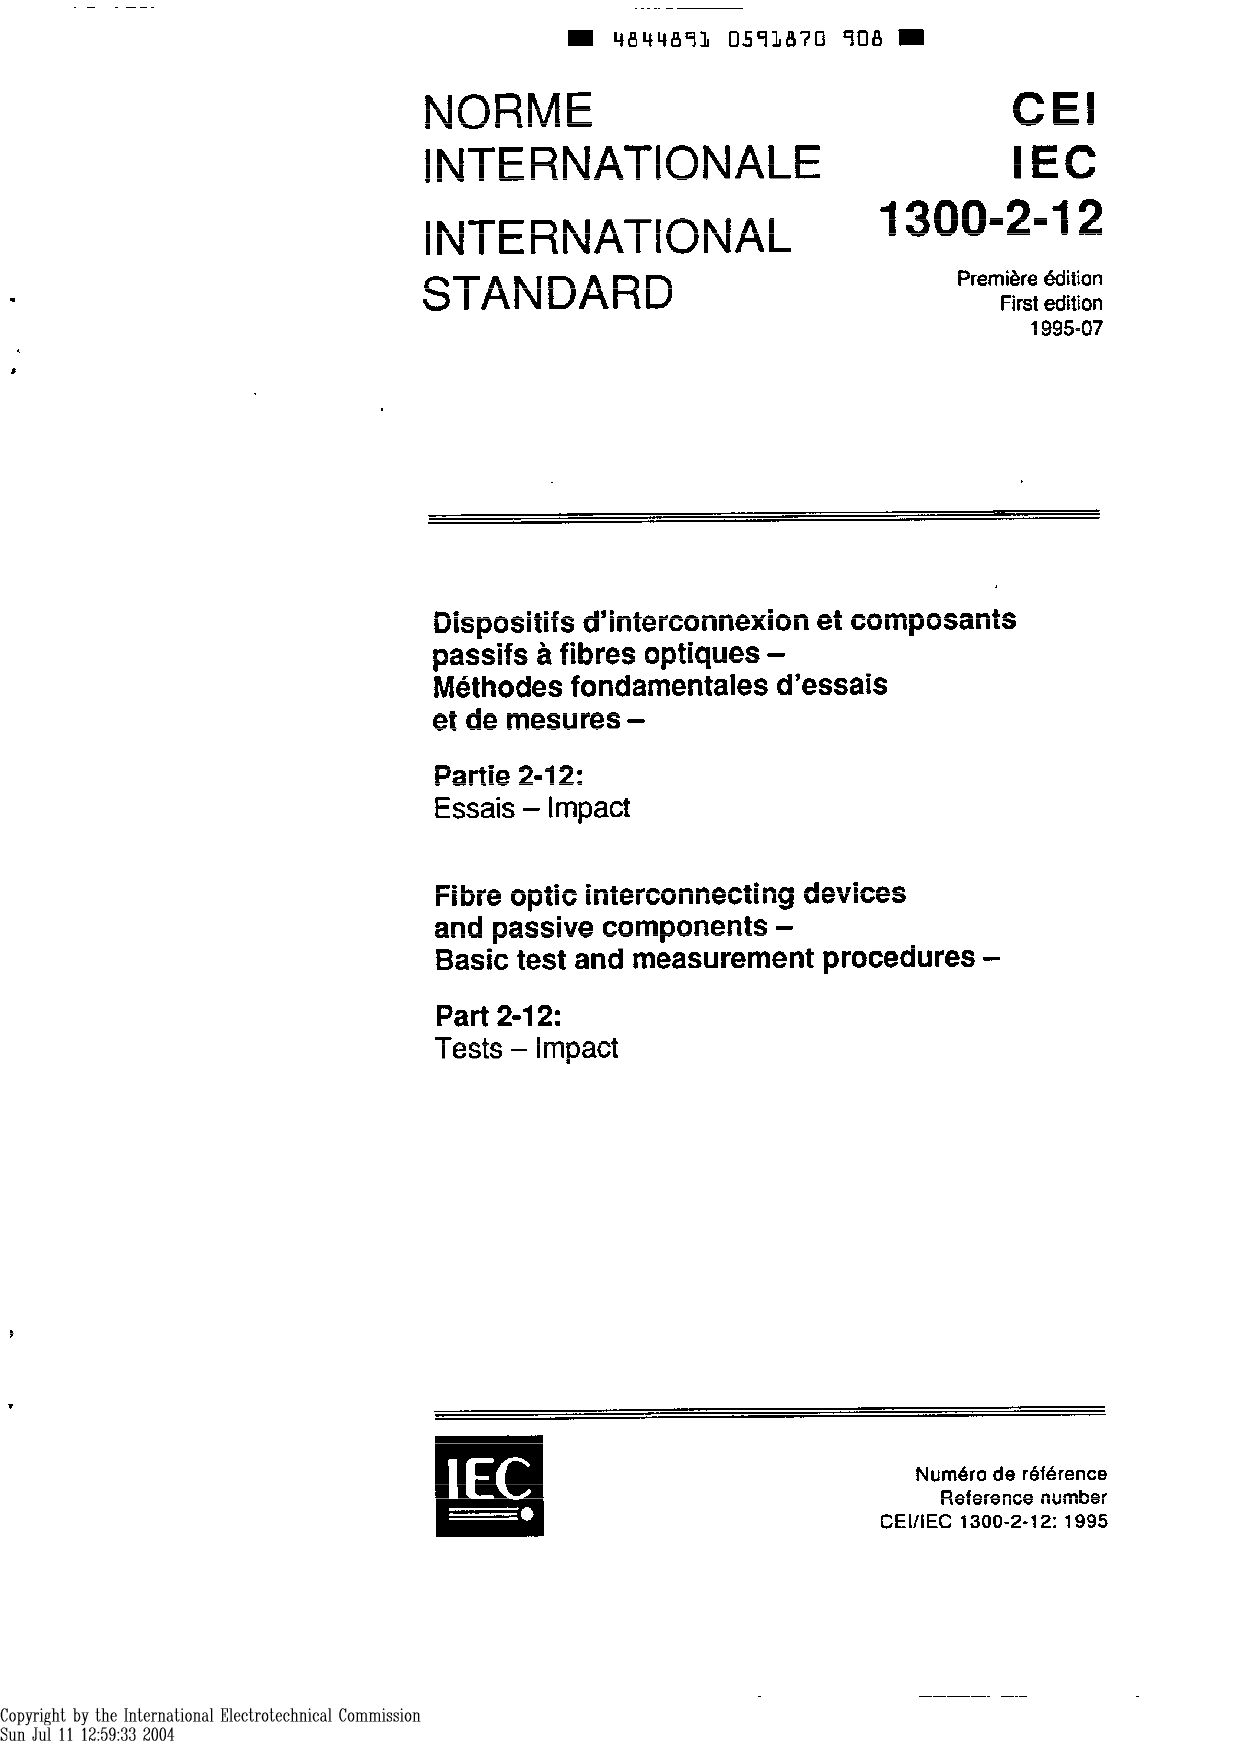 IEC 61300-2-12:1995